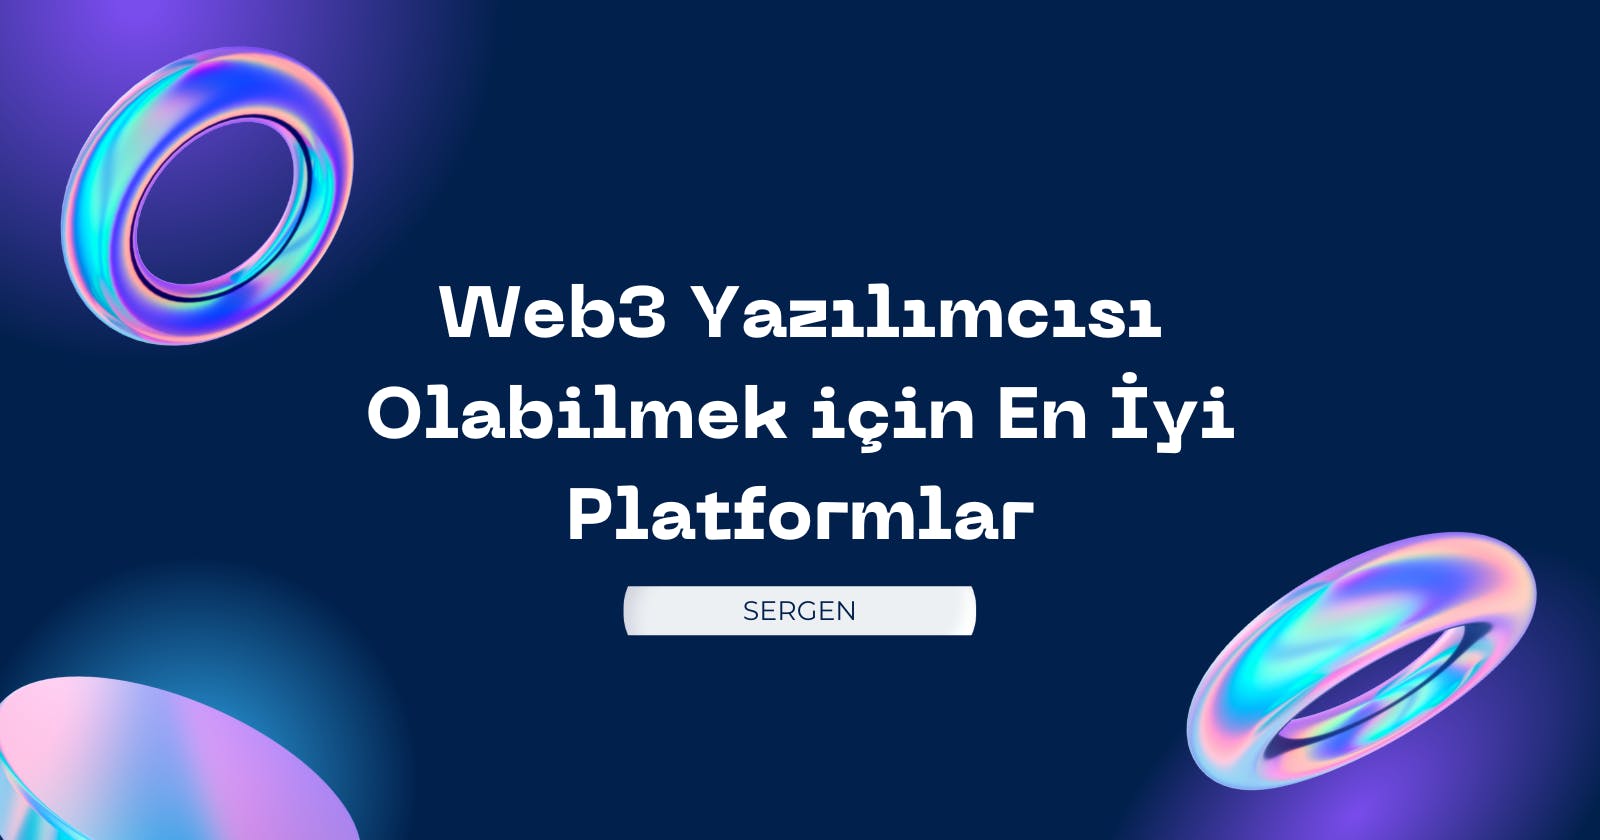 Web3 Yazılımcısı Olabilmek için En İyi Platformlar